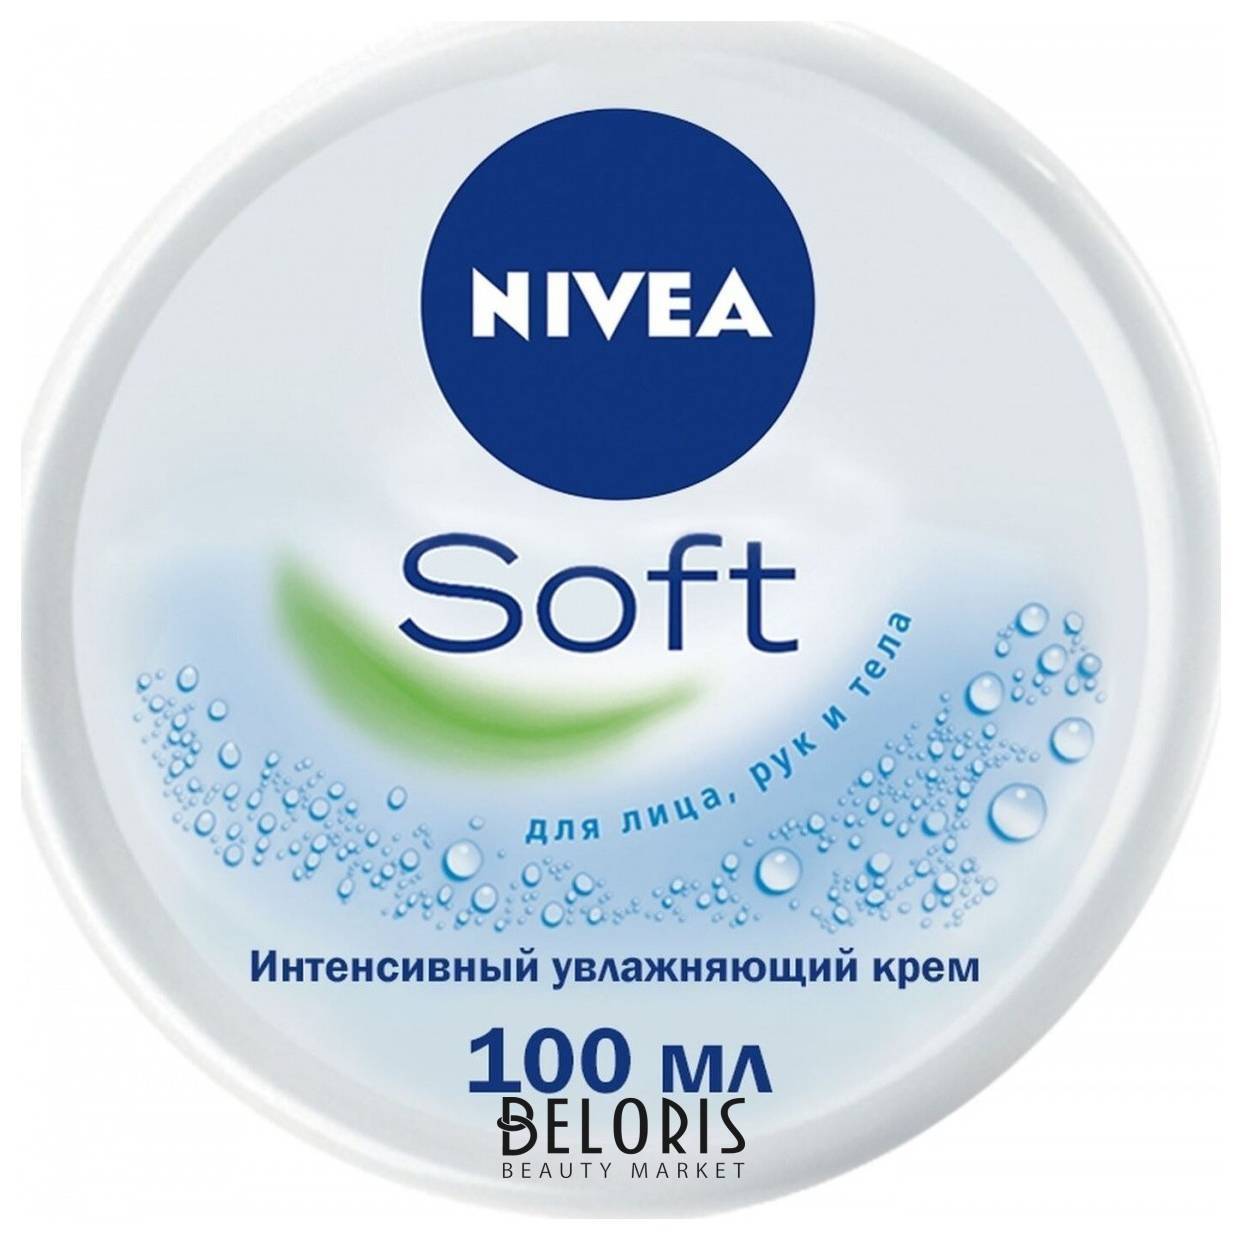 Интенсивный увлажняющий крем для лица, рук и тела Nivea Soft